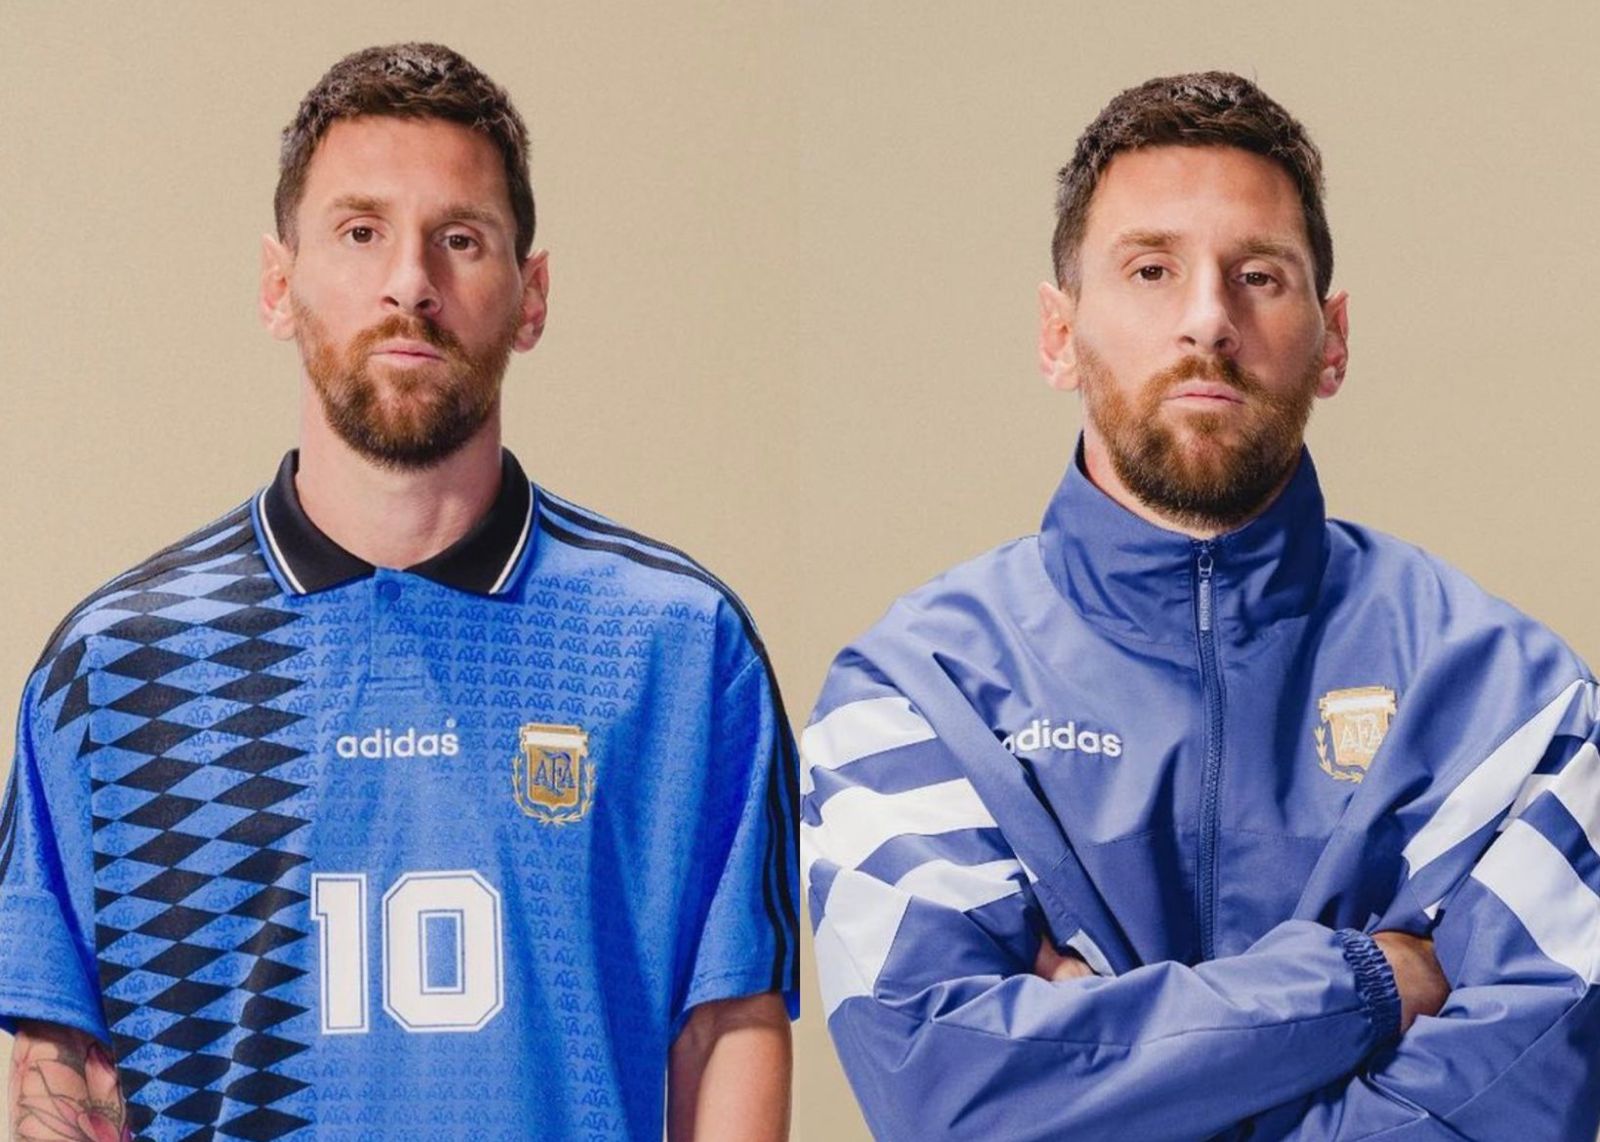 Por qué Argentina no utilizó la camiseta 10 de Messi? - AS Argentina